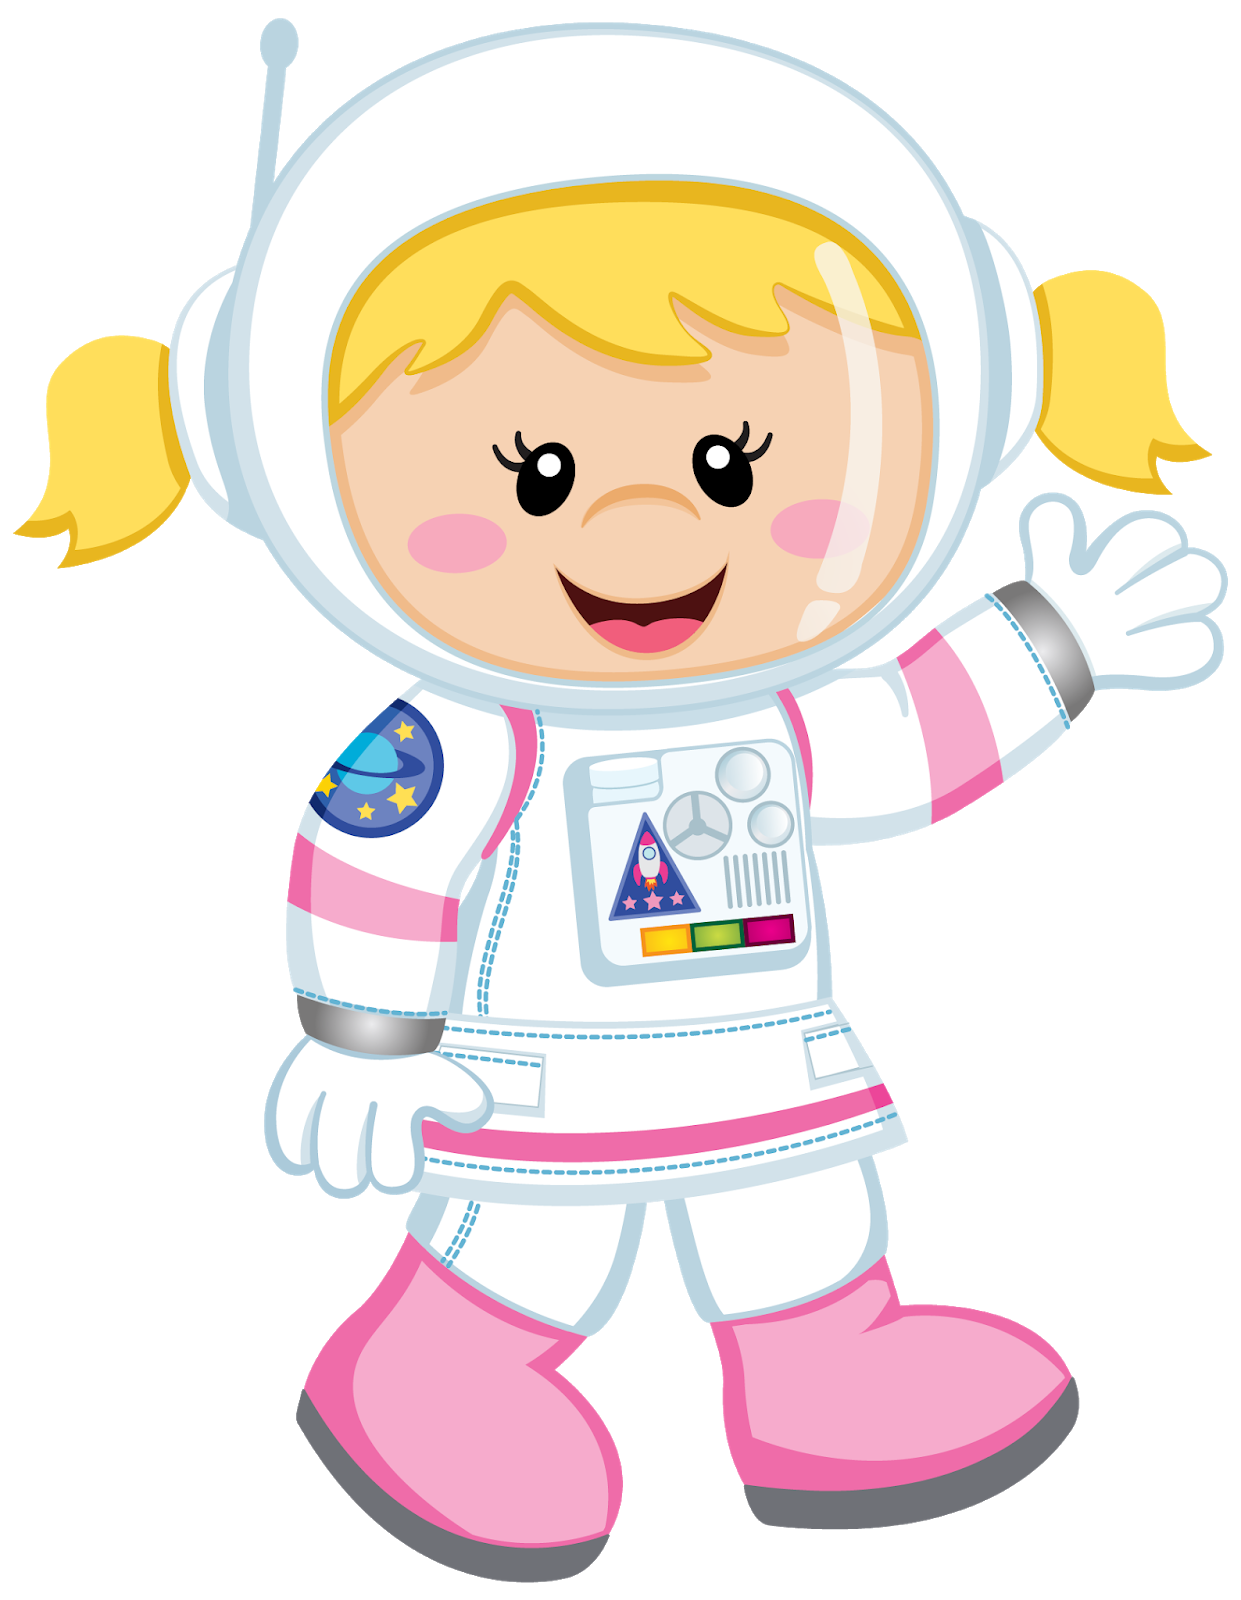 Космонавт картинки для детей дошкольного возраста. Космонавт для детей без фона. Мультяшные космонавты. Человечки в скафандрах. Астронавт мультяшный.